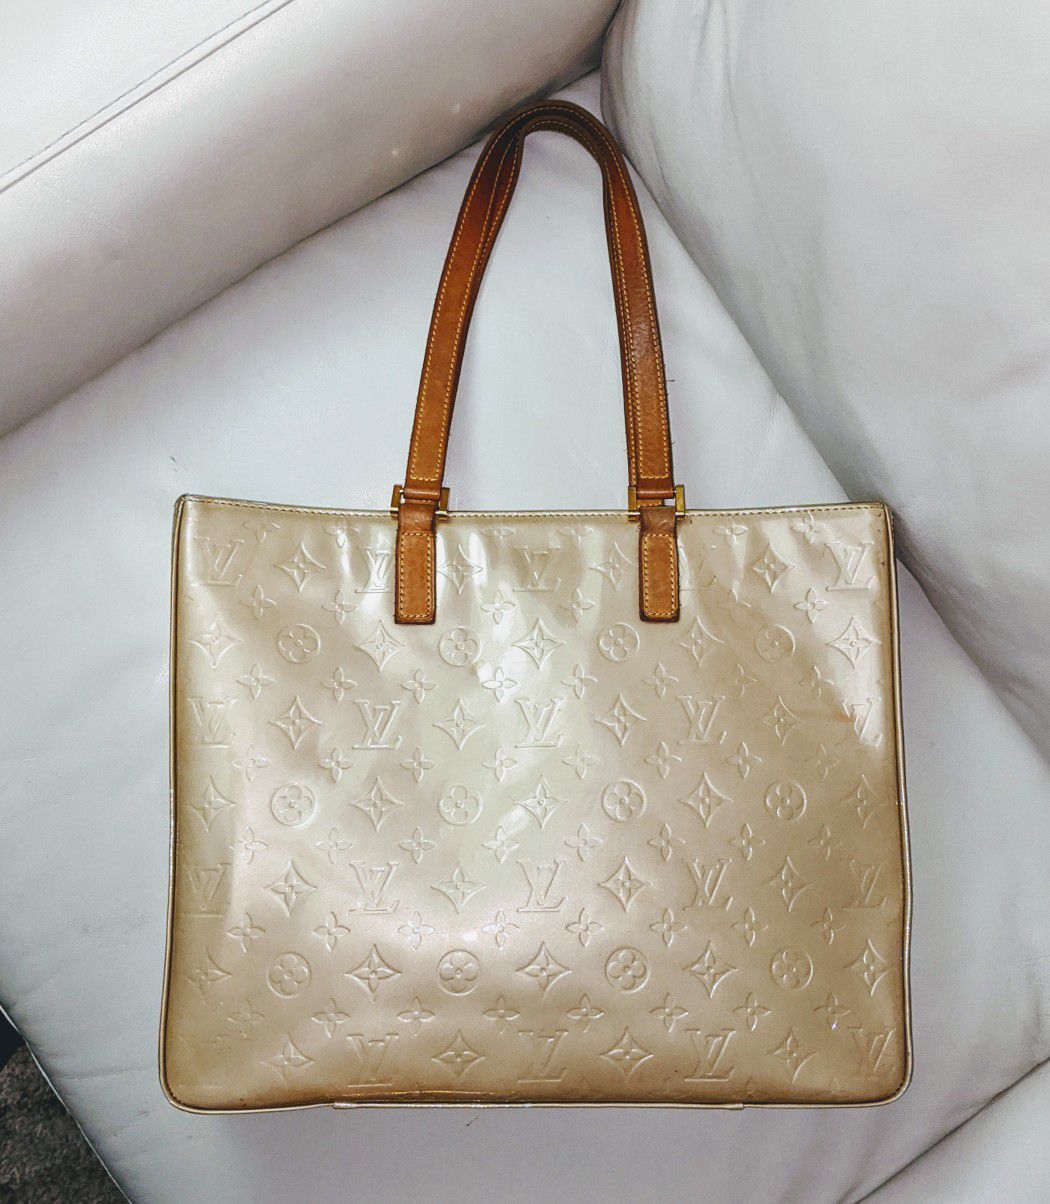 Louis Vuitton beige Vernis Large tote bag zipper closure 100% authentic